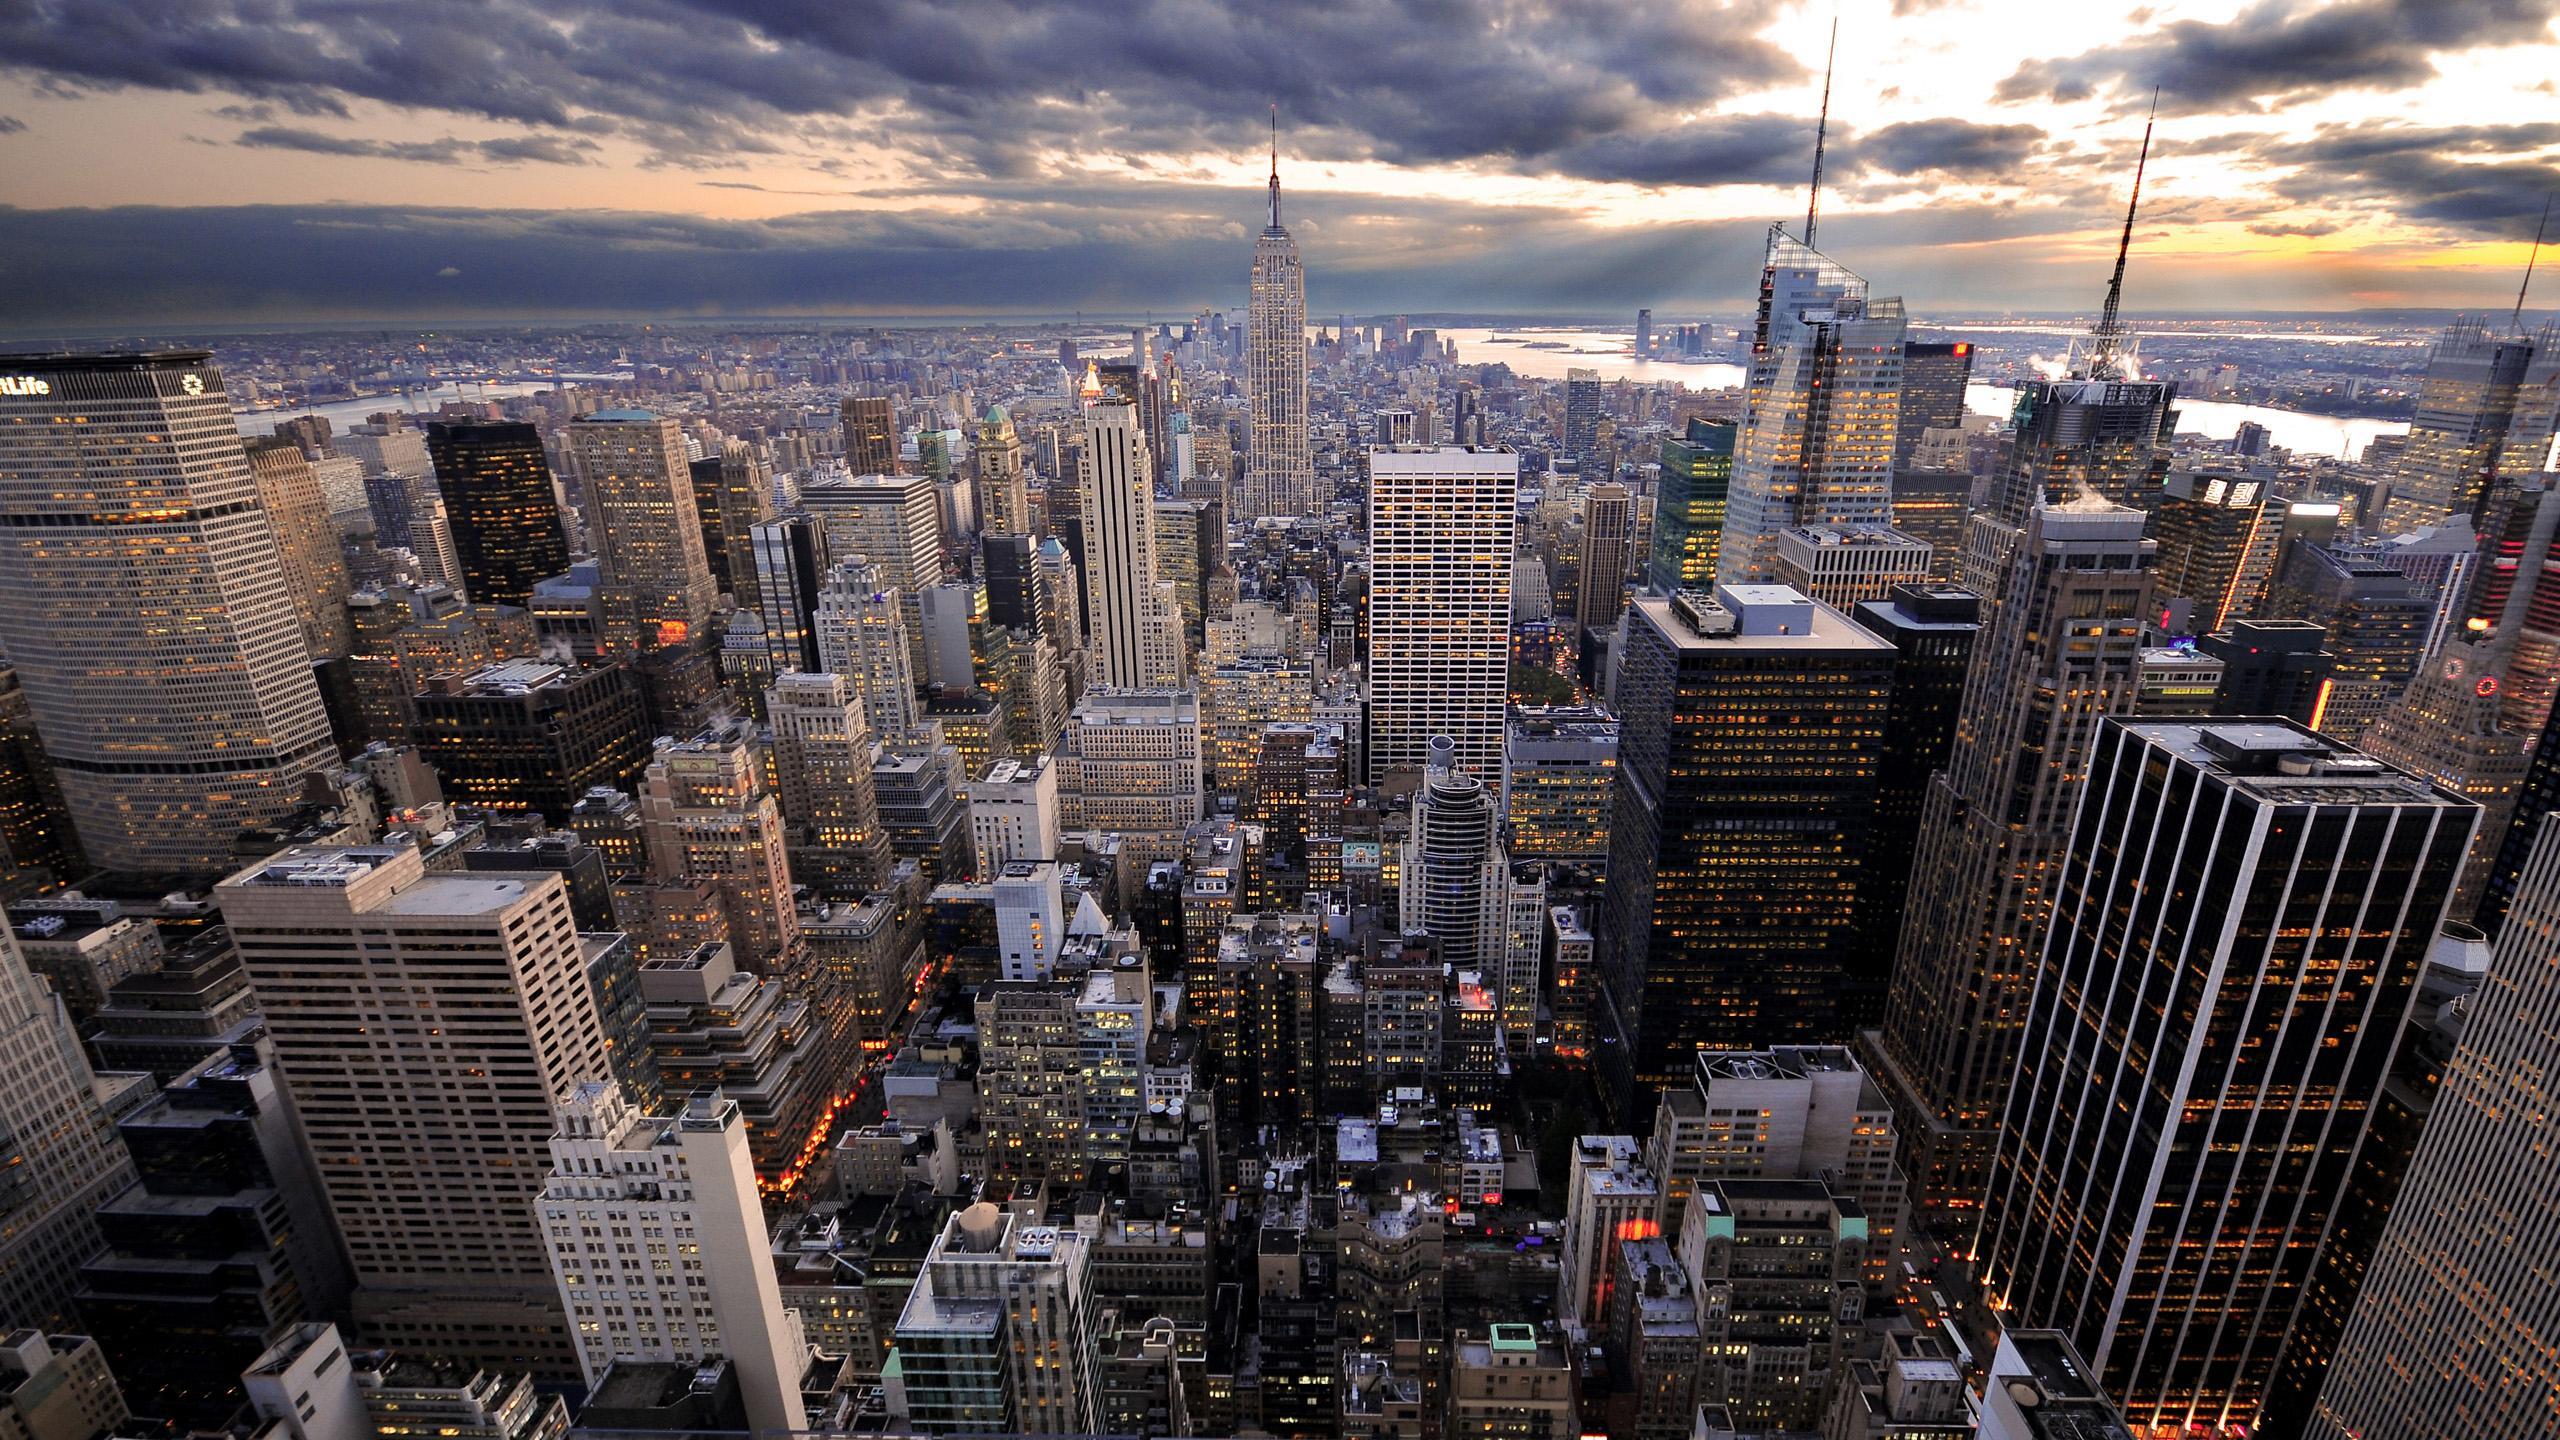 Desktop Wallpaper New York City USA Cities 2560x1440